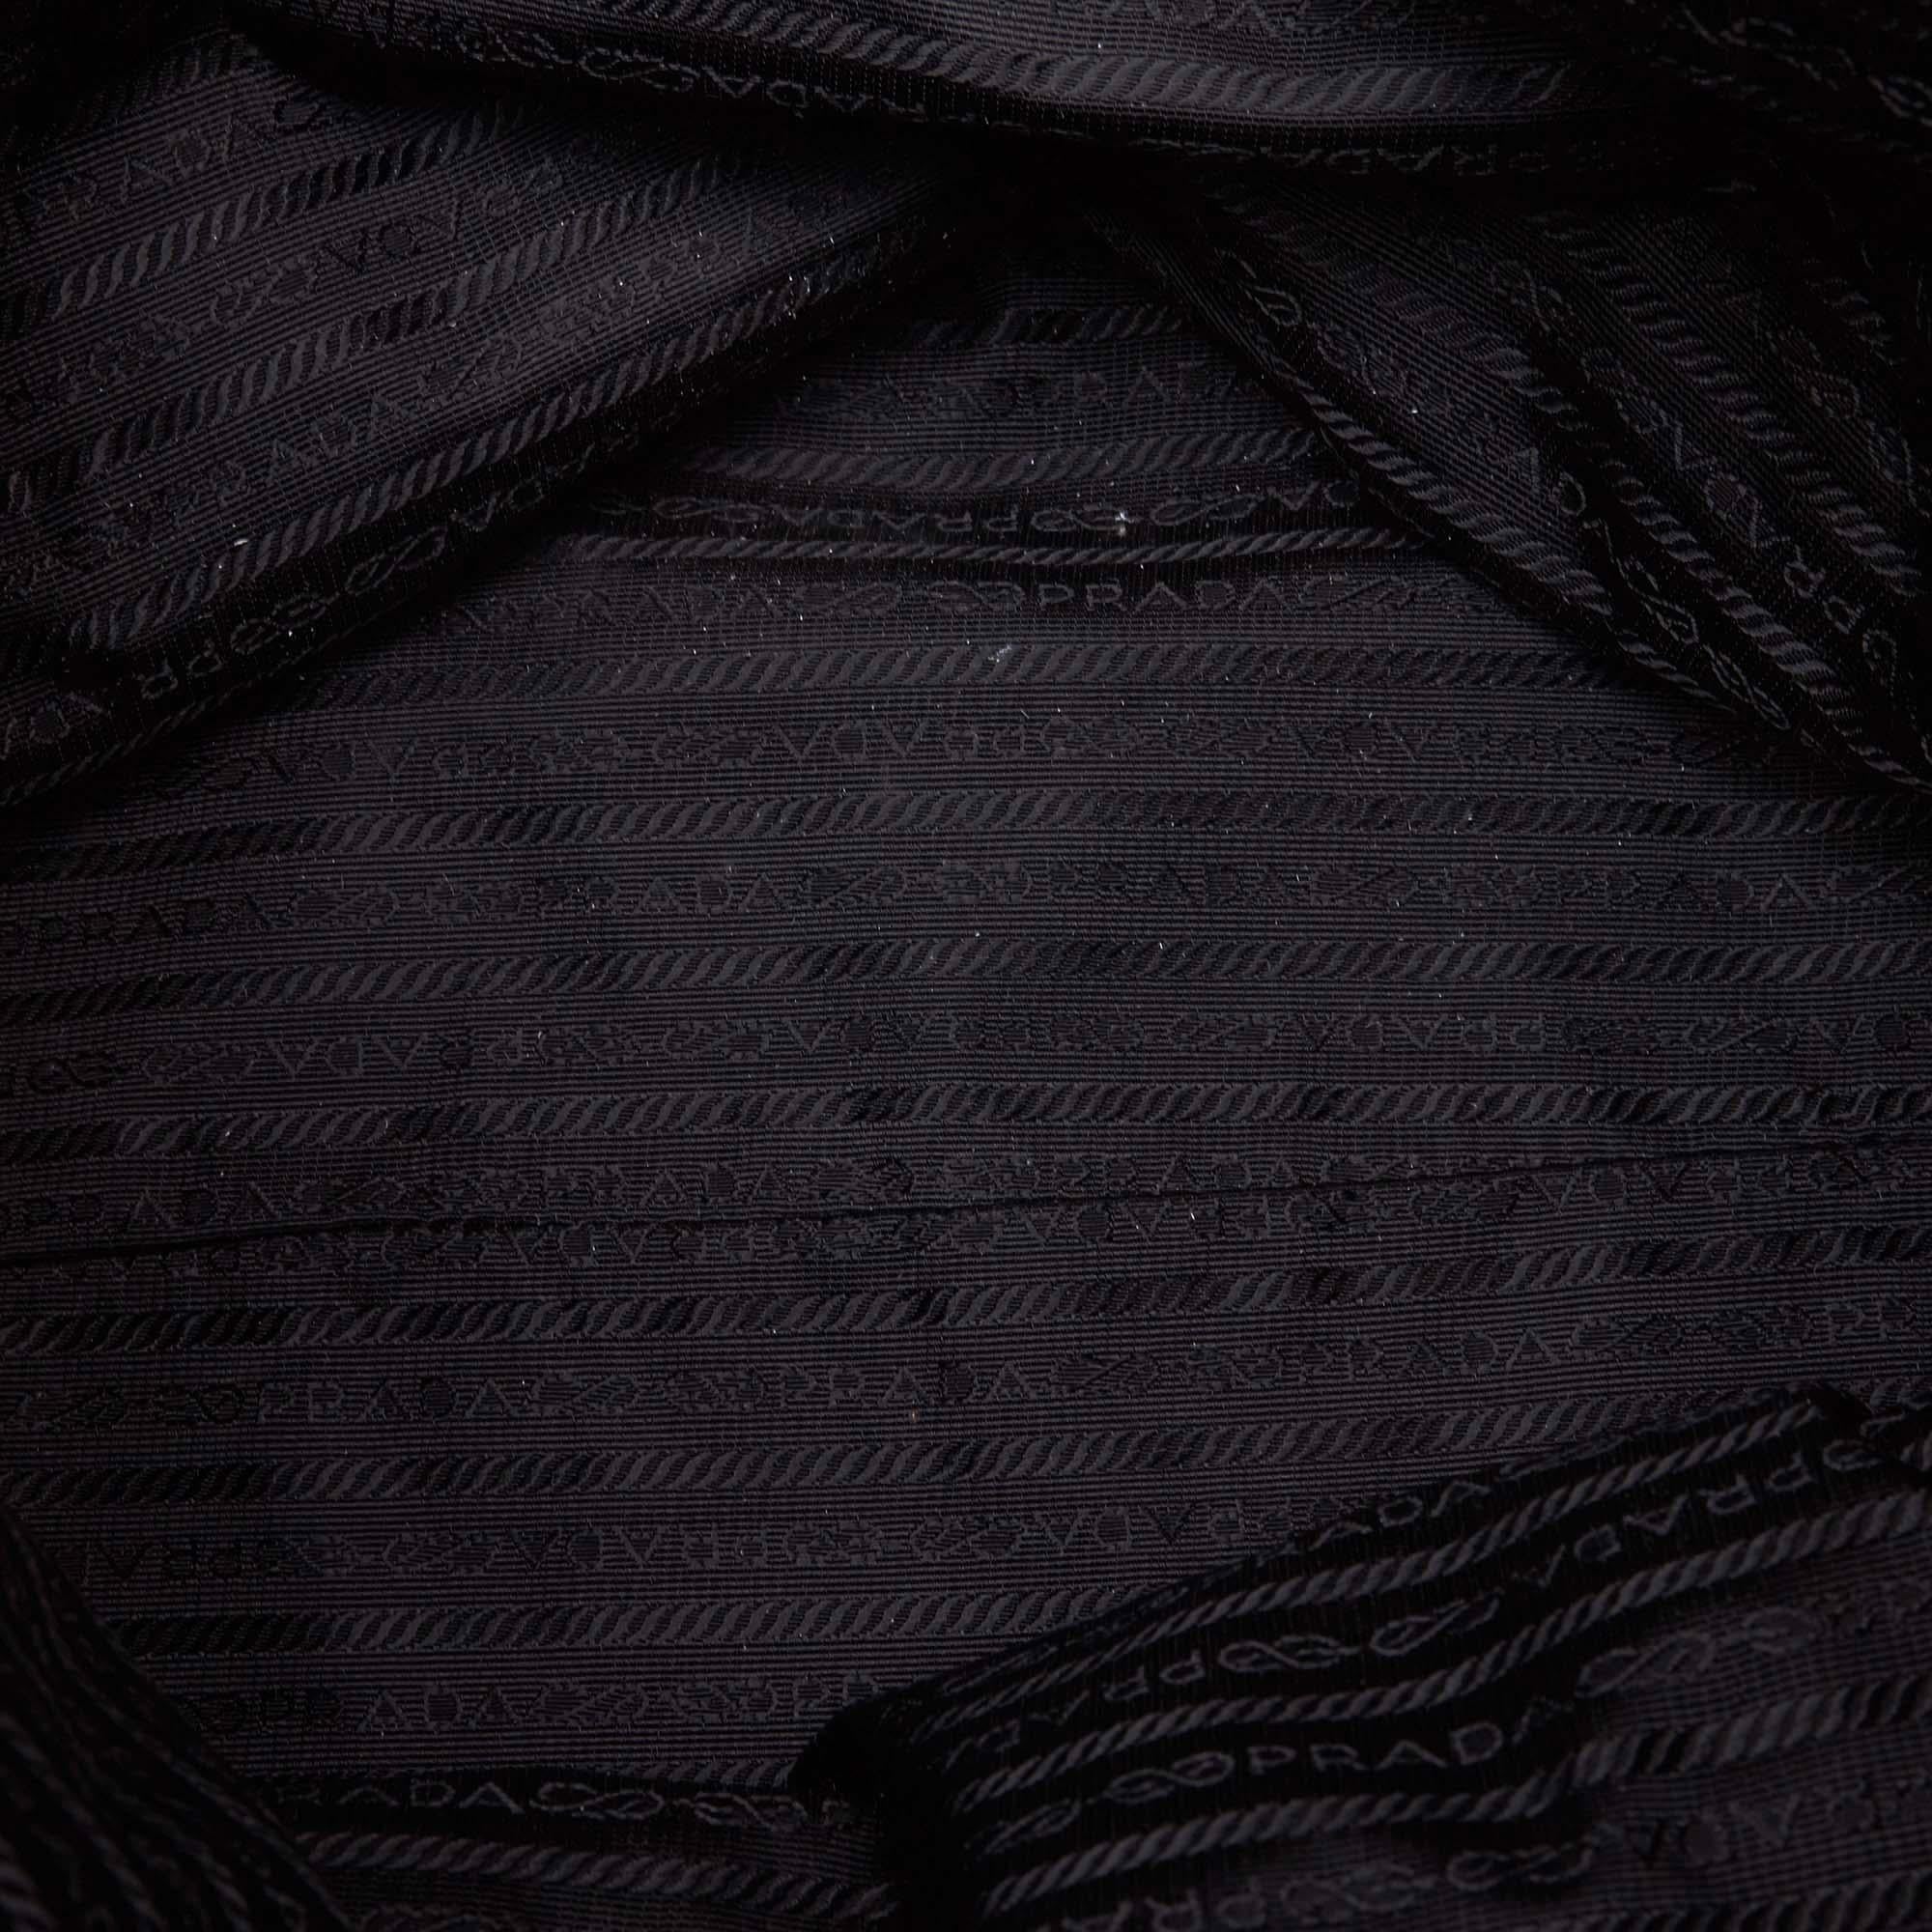 Vintage Authentic Prada Black Nylon Fabric Gathered Handbag ITALY LARGE  1